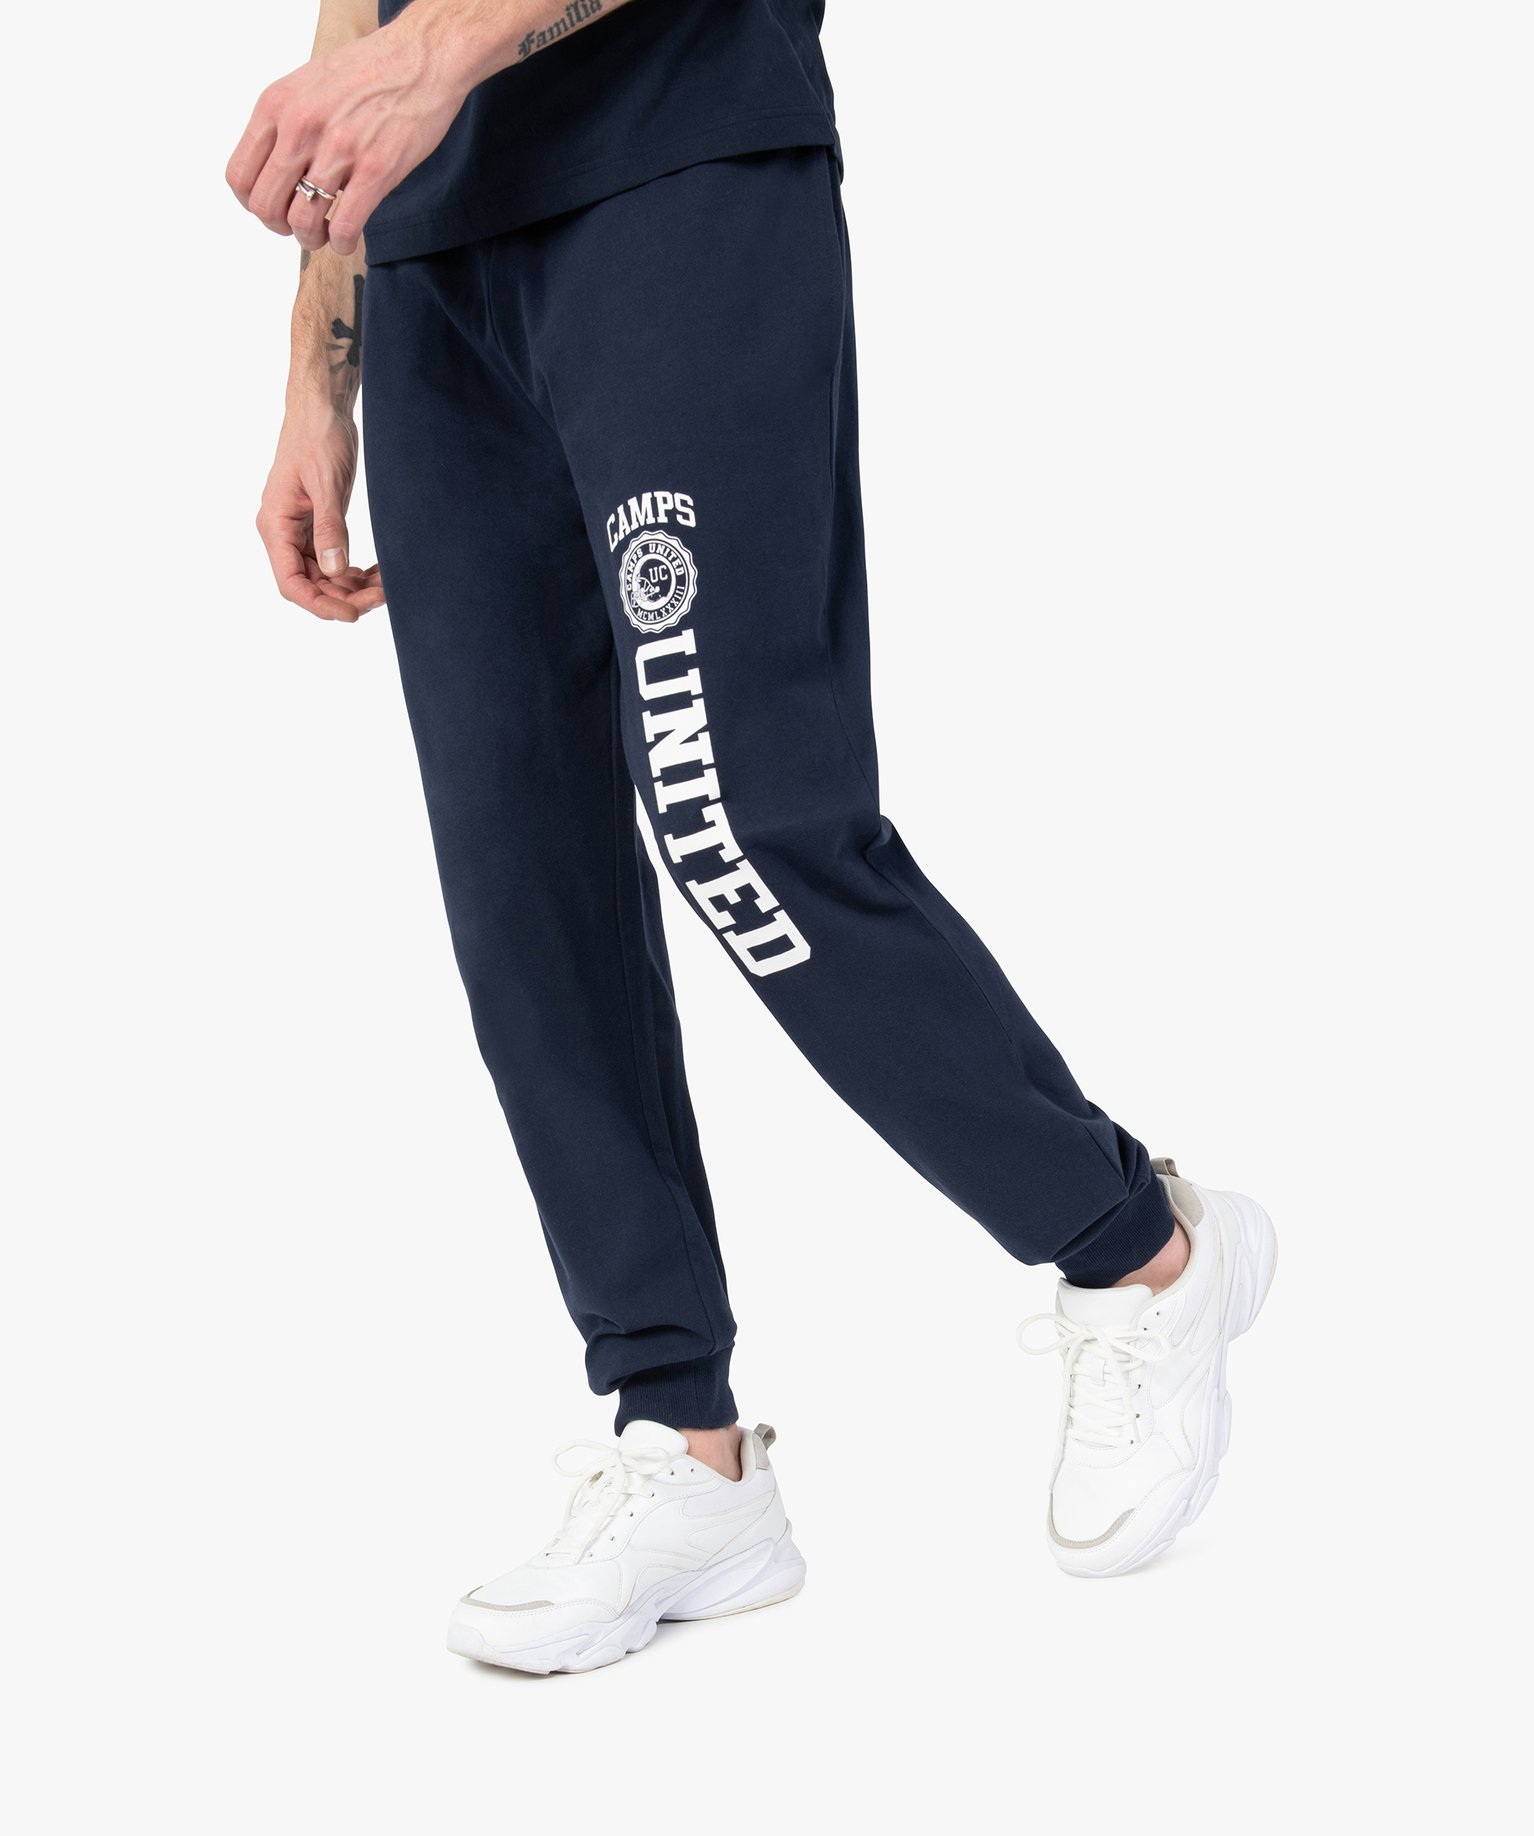 pantalon de jogging homme avec inscription - camps united bleu